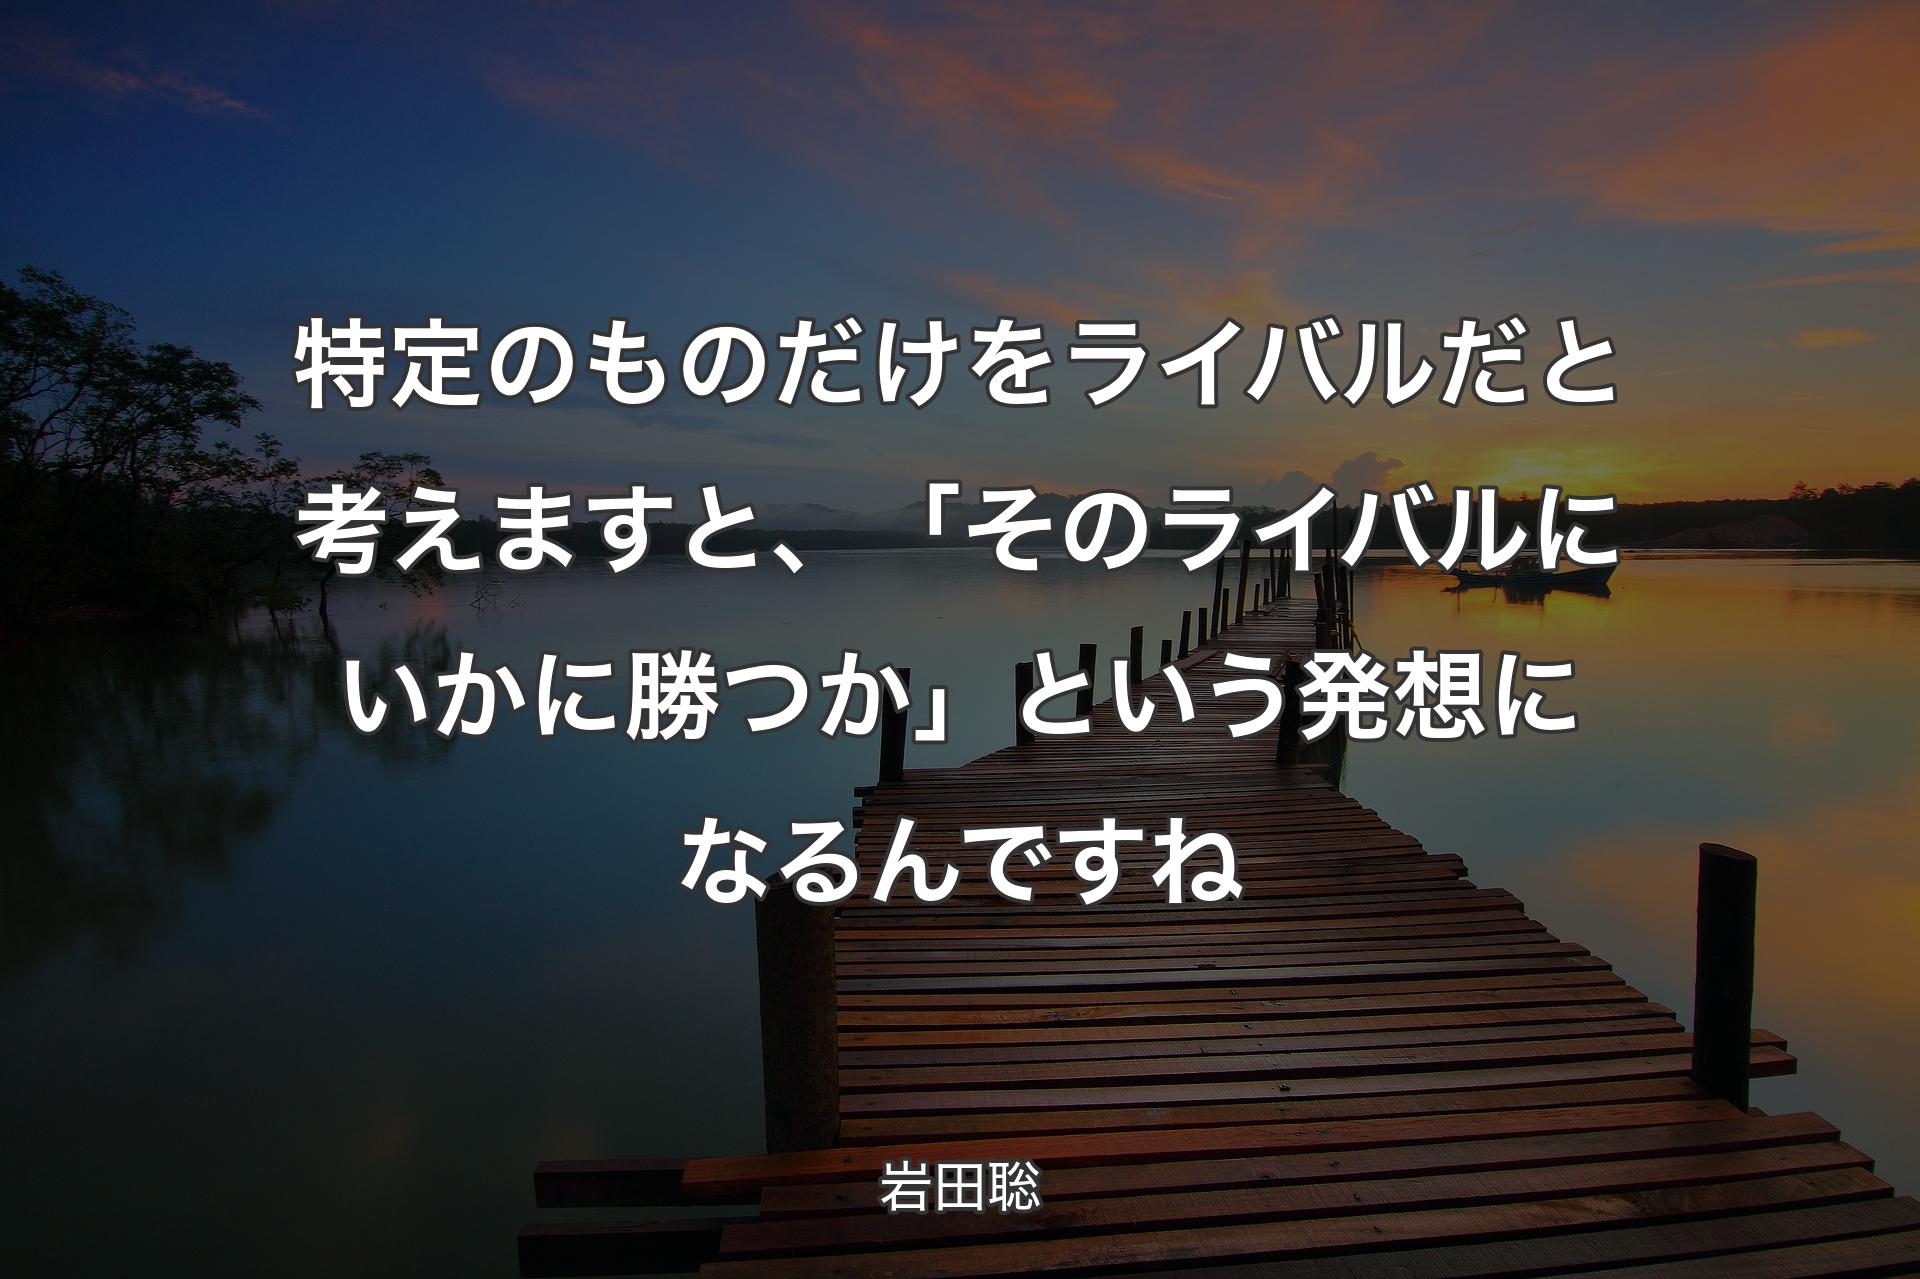 【背景3】特定のもの�だけをライバルだと考えますと、「そのライバルにいかに勝つか」という発想になるんですね - 岩田聡